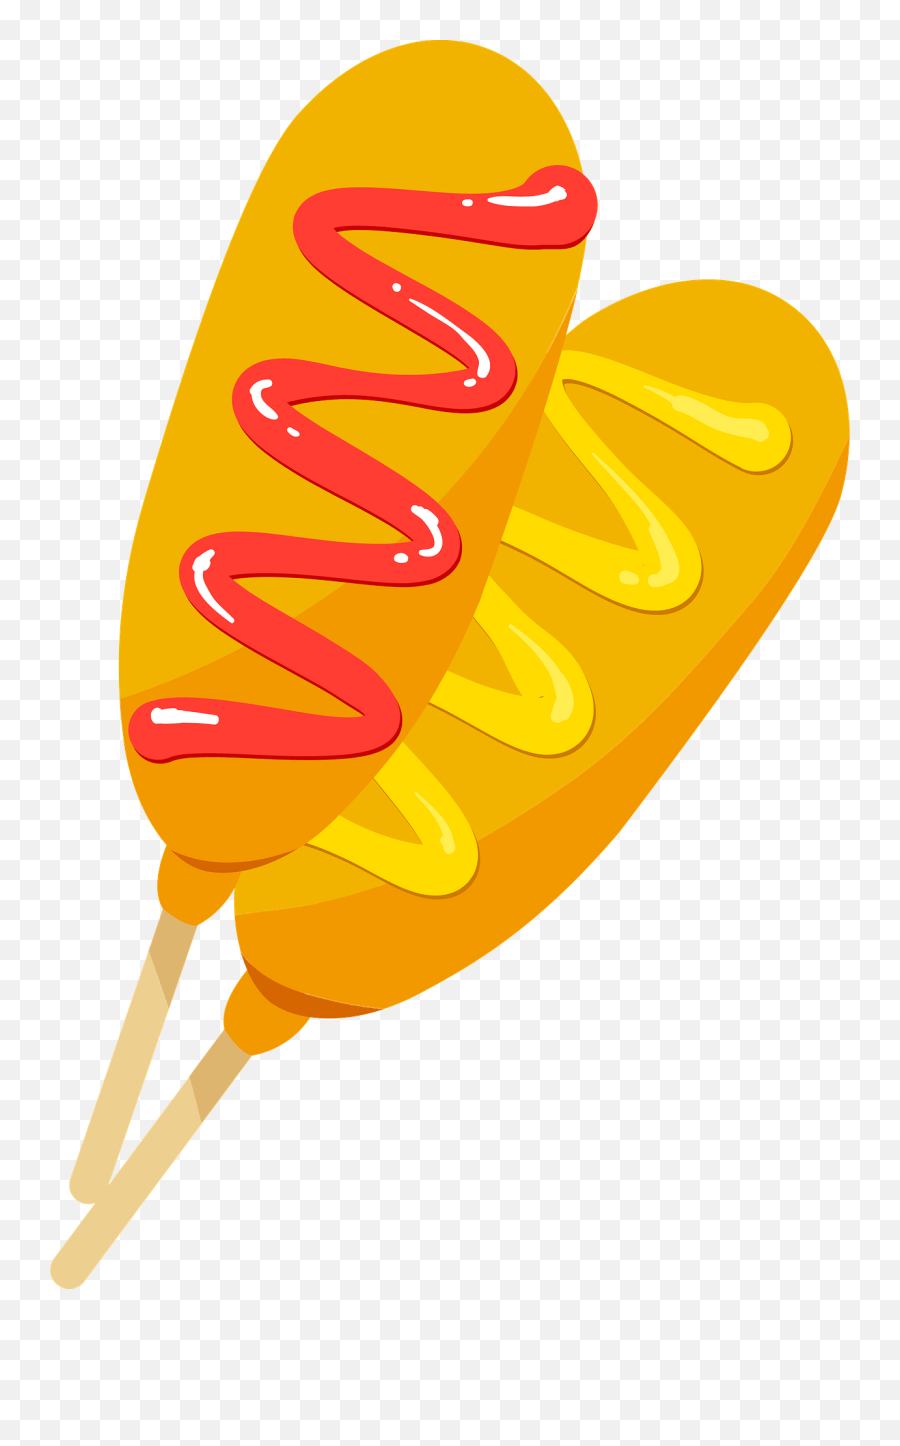 Corn Dog With Ketchup And Mustard - Clip Art Corn Dog Png Emoji,Hot Dog Clipart